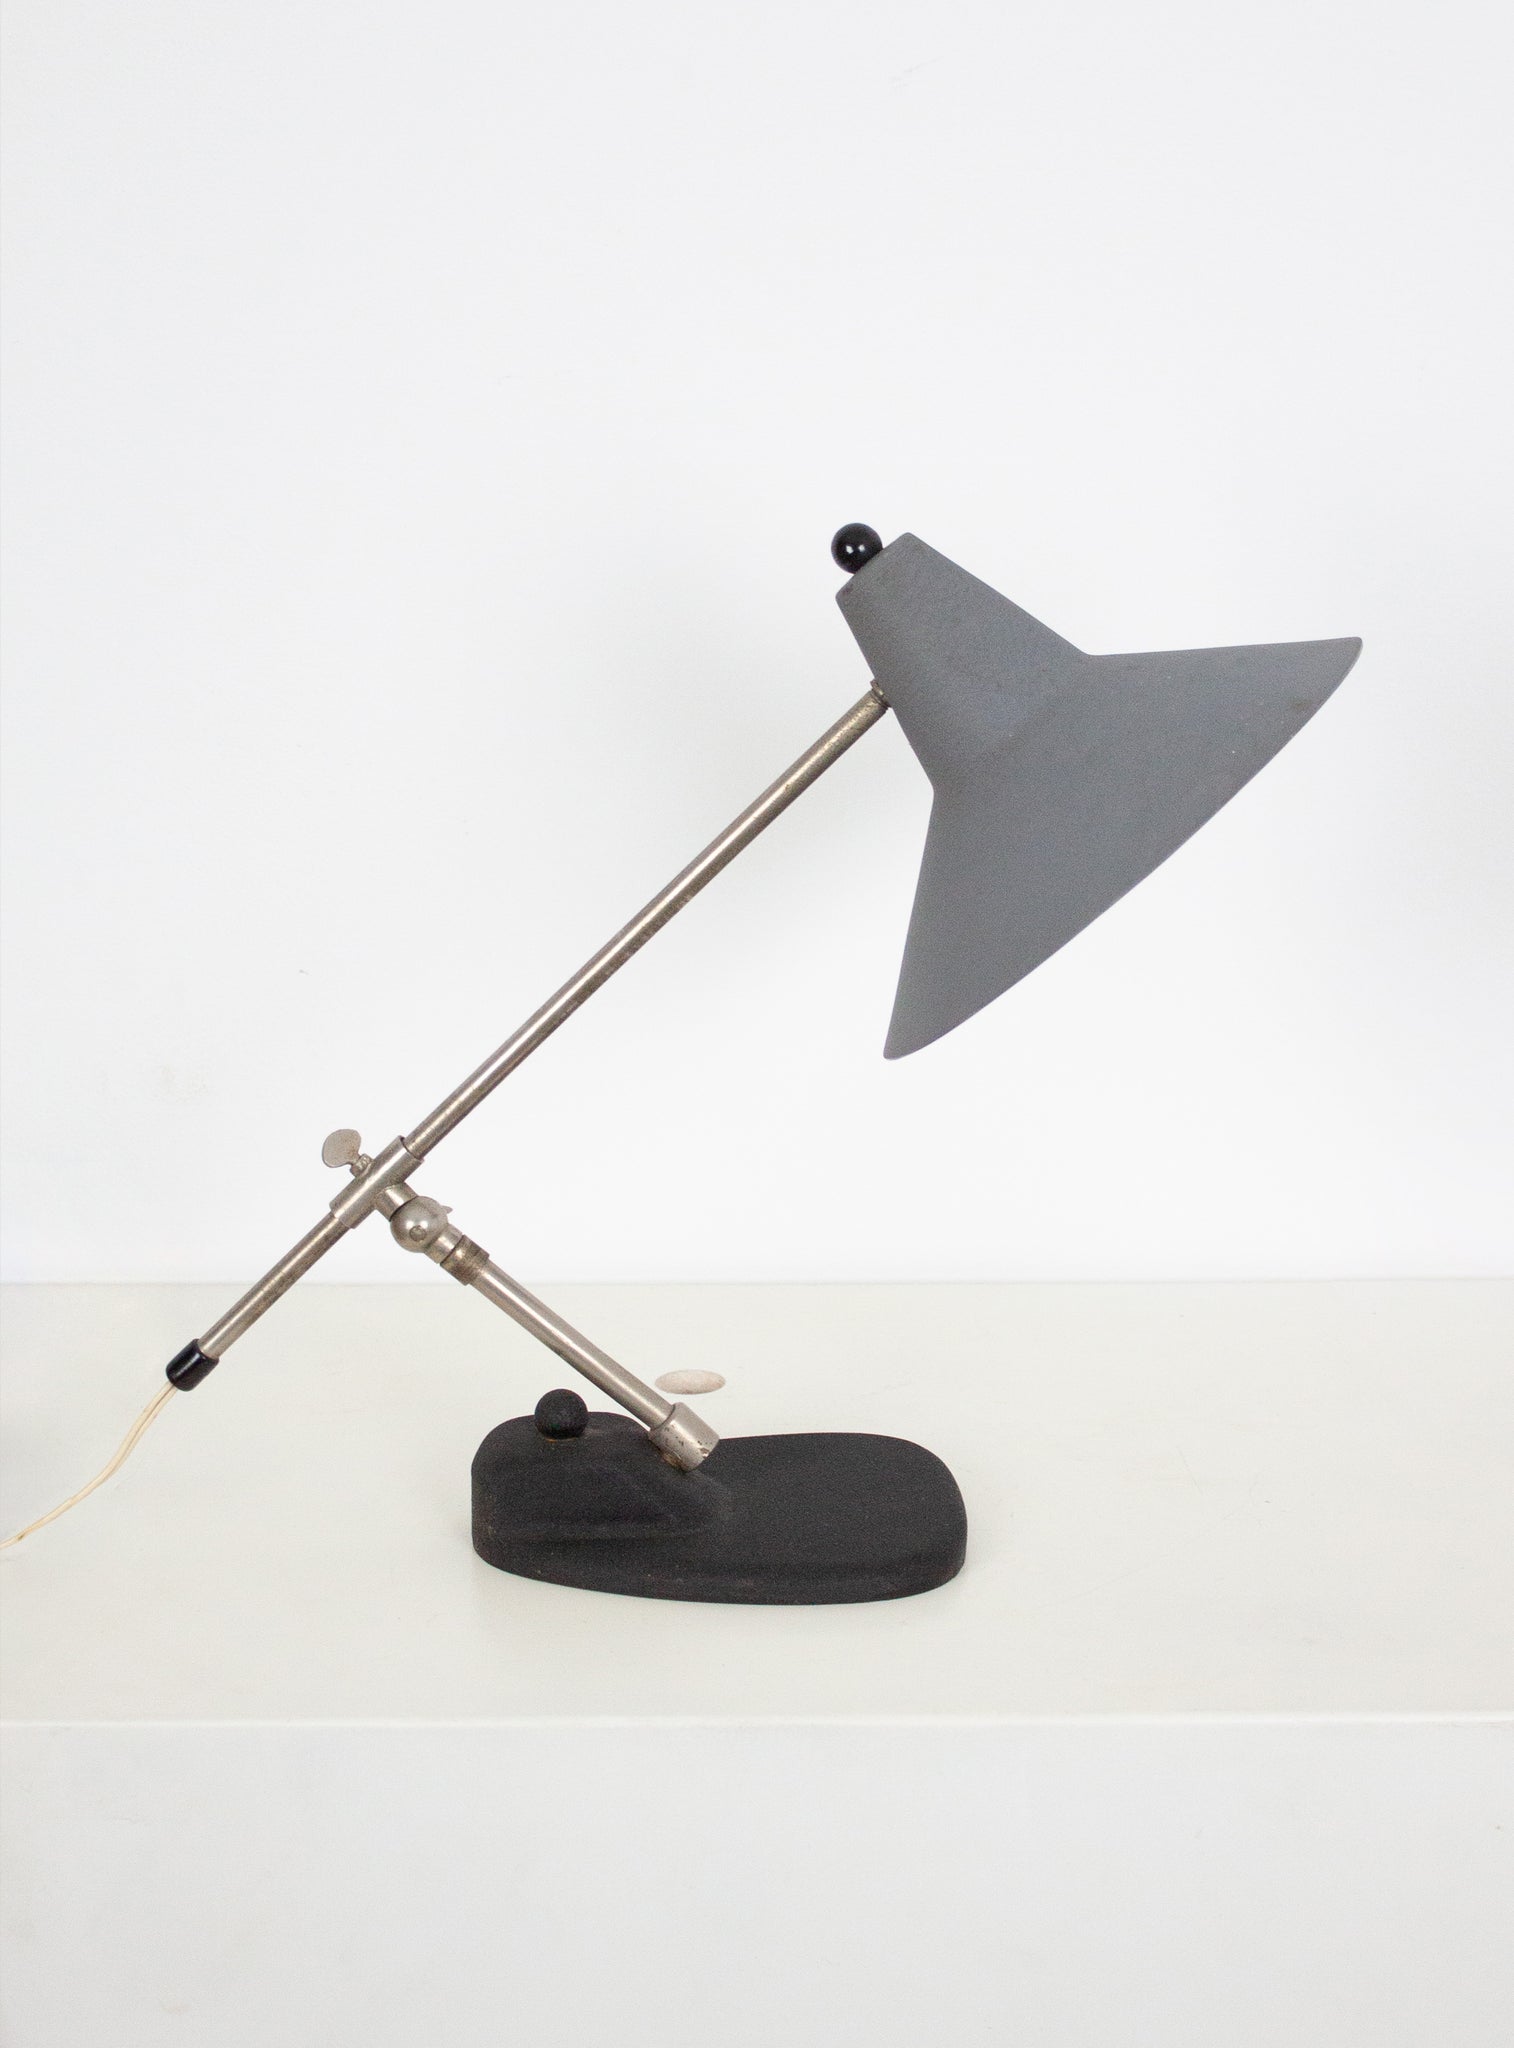 Metal Desk Lamp in style of Stilnovo or Cosack (Grey)